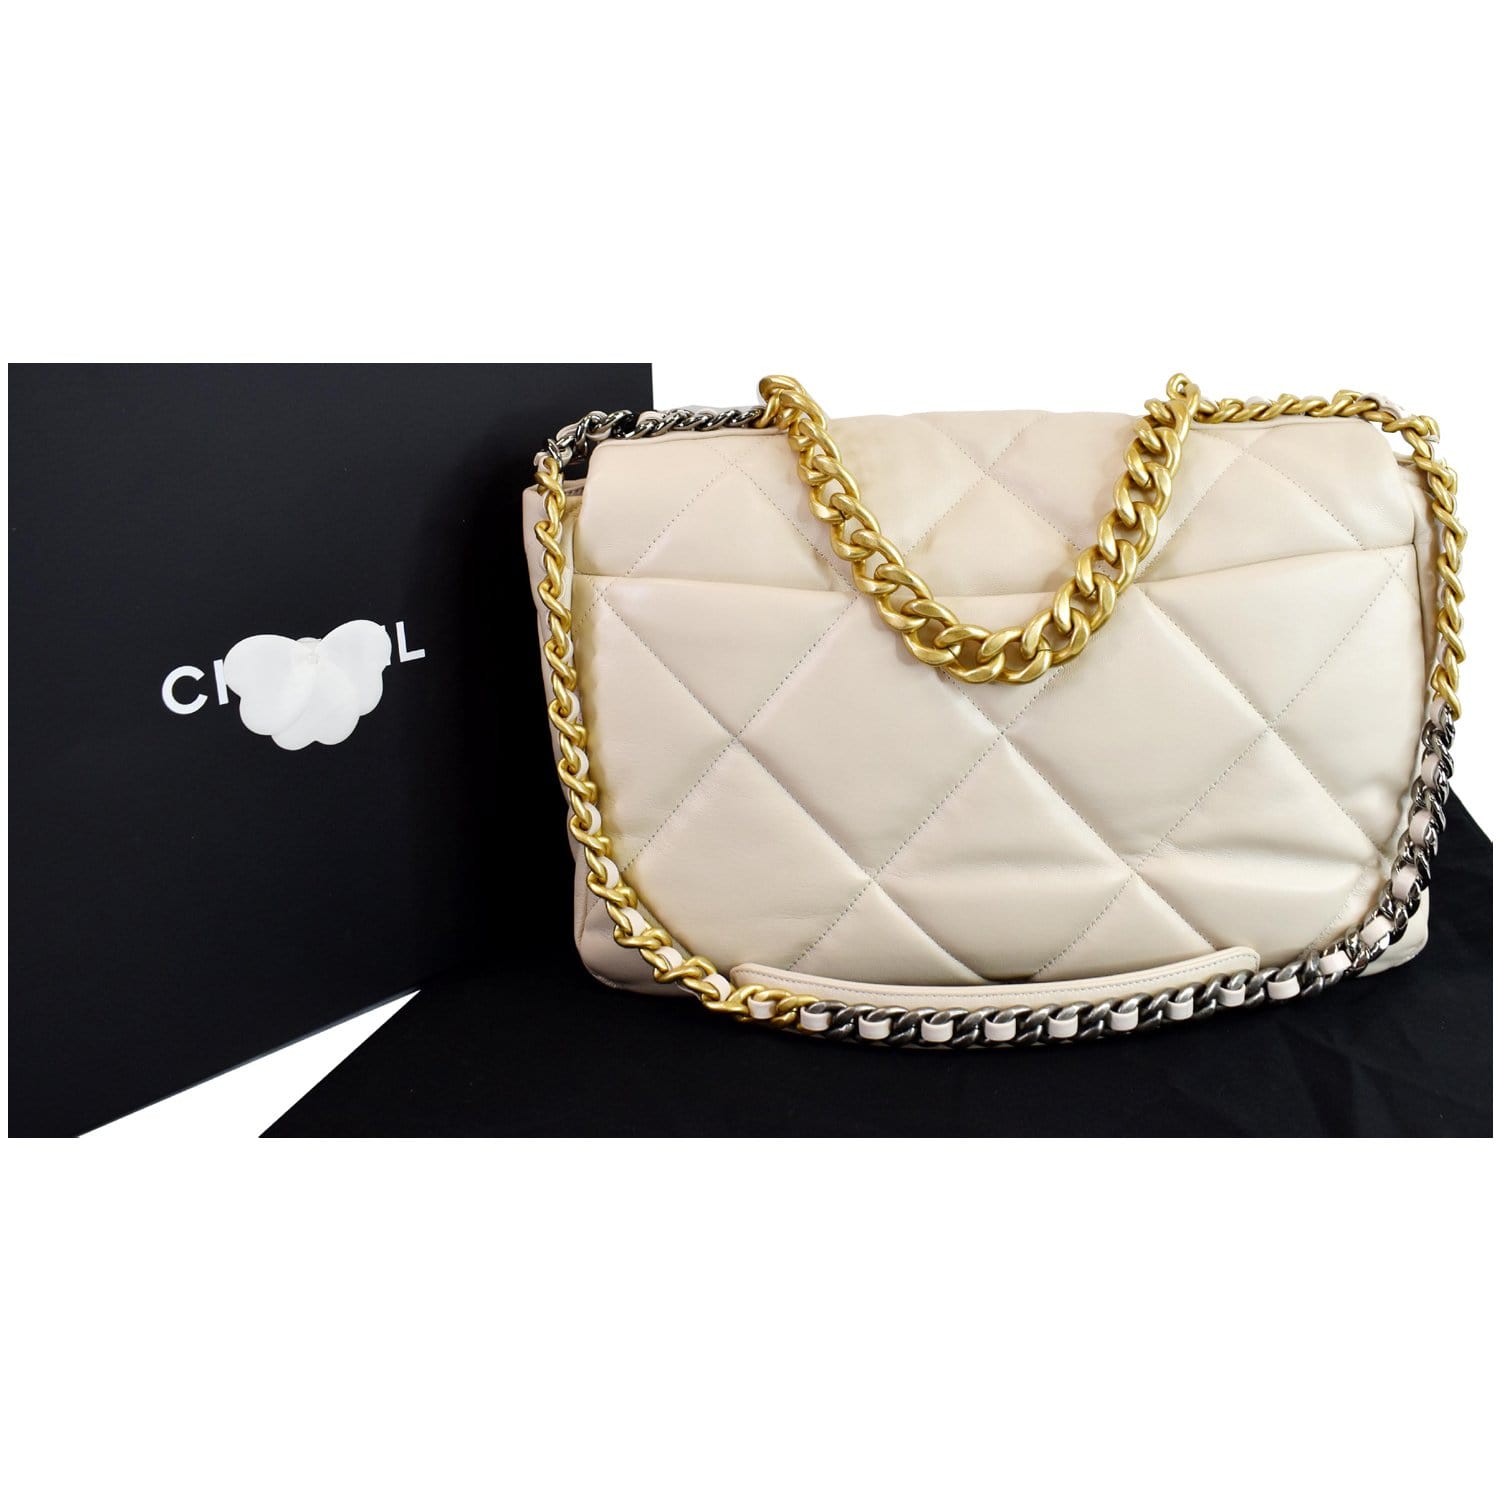 Chanel classic handbag creme  Klassische handtaschen, Chanel handtaschen,  Modische handtaschen